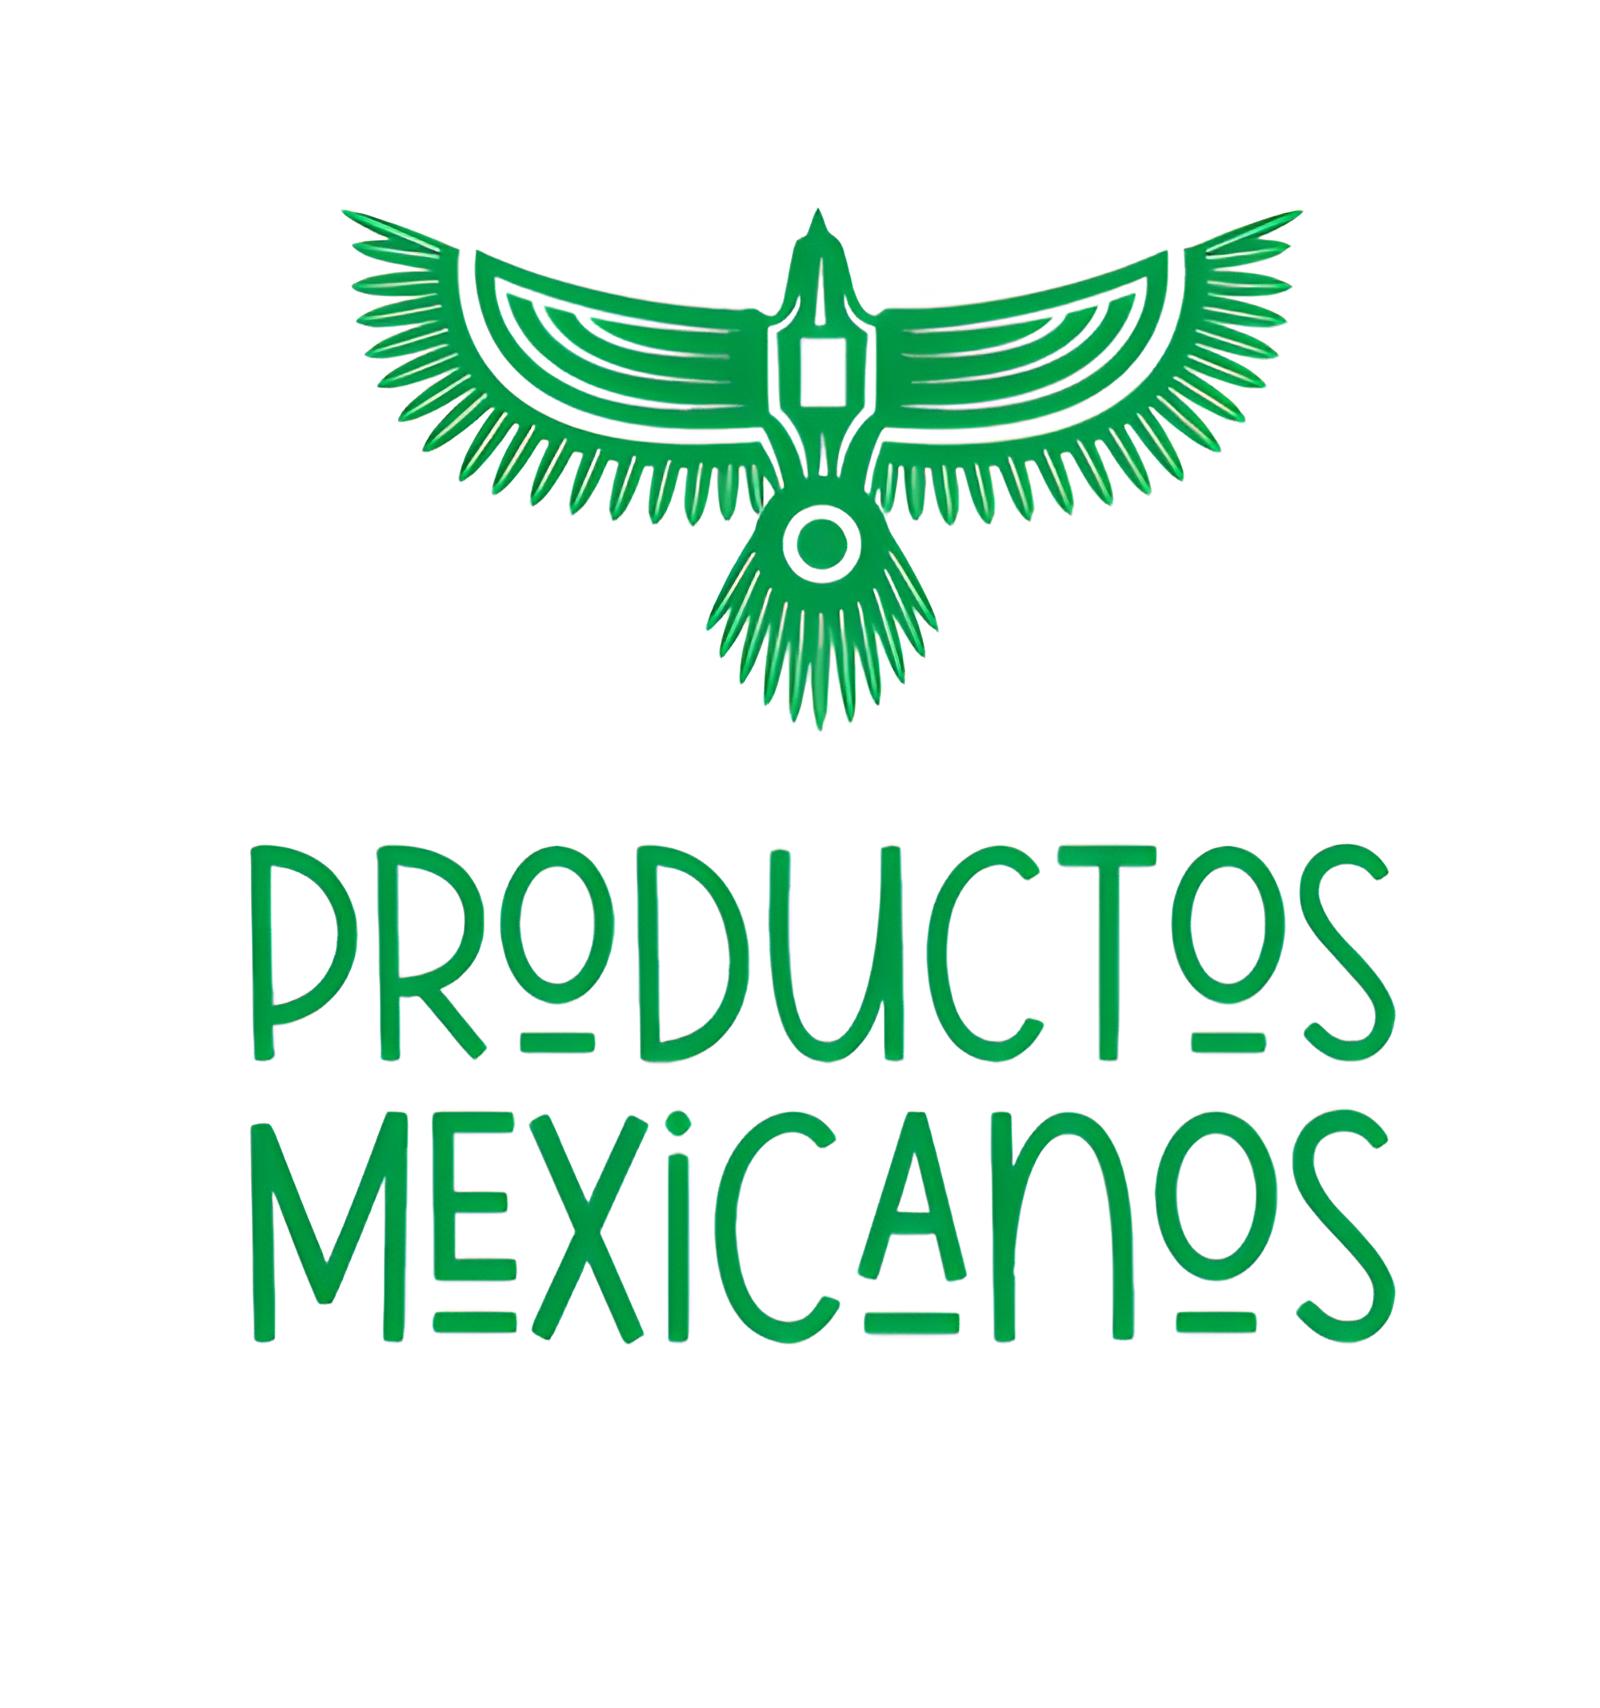 PRODUCTOS MEXICANOS